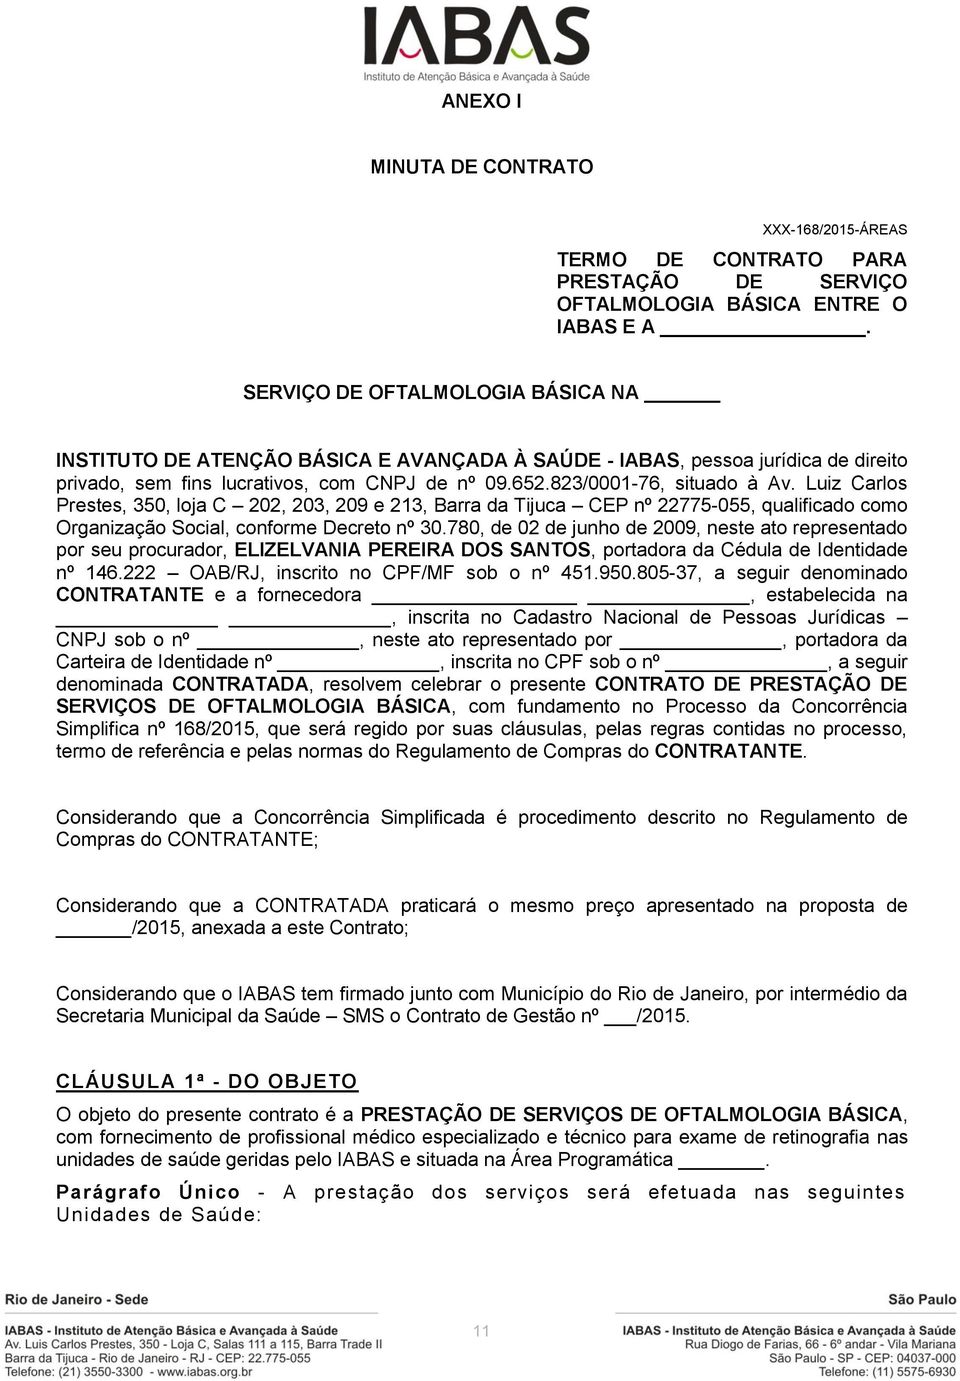 Luiz Carlos Prestes, 350, loja C 202, 203, 209 e 213, Barra da Tijuca CEP nº 22775-055, qualificado como Organização Social, conforme Decreto nº 30.